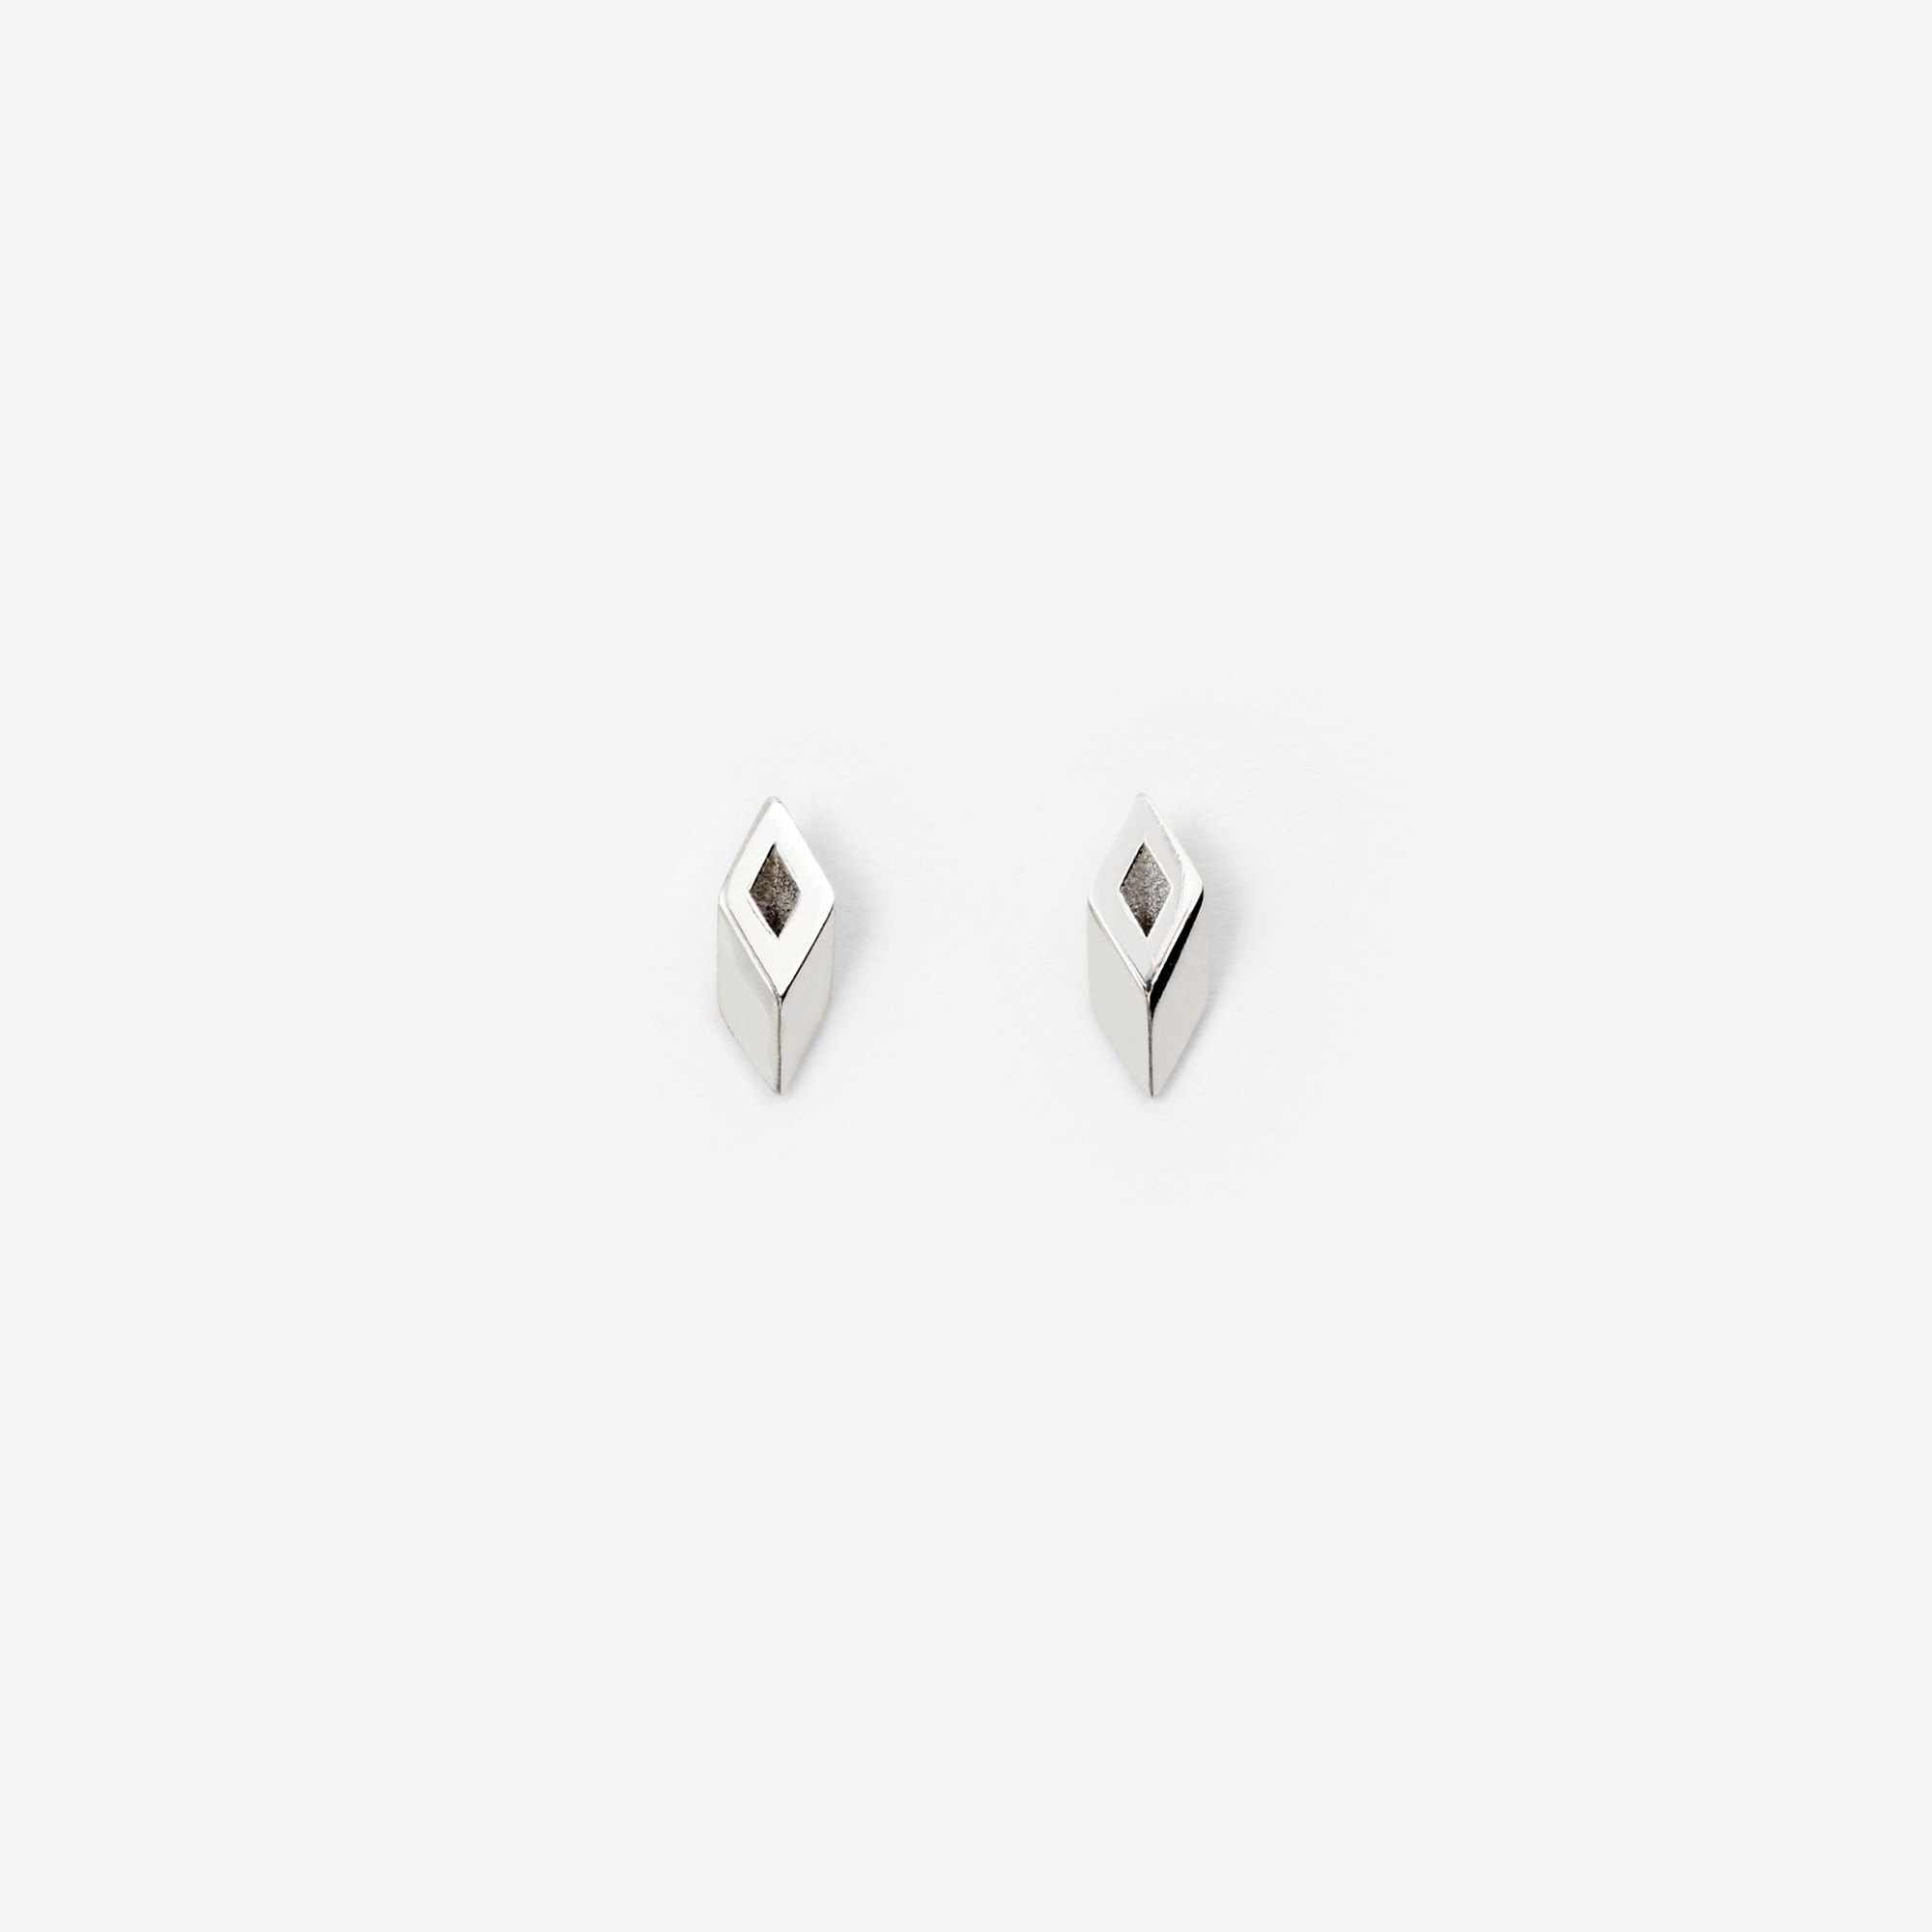 Silver Hollow Stud Earrings - 1